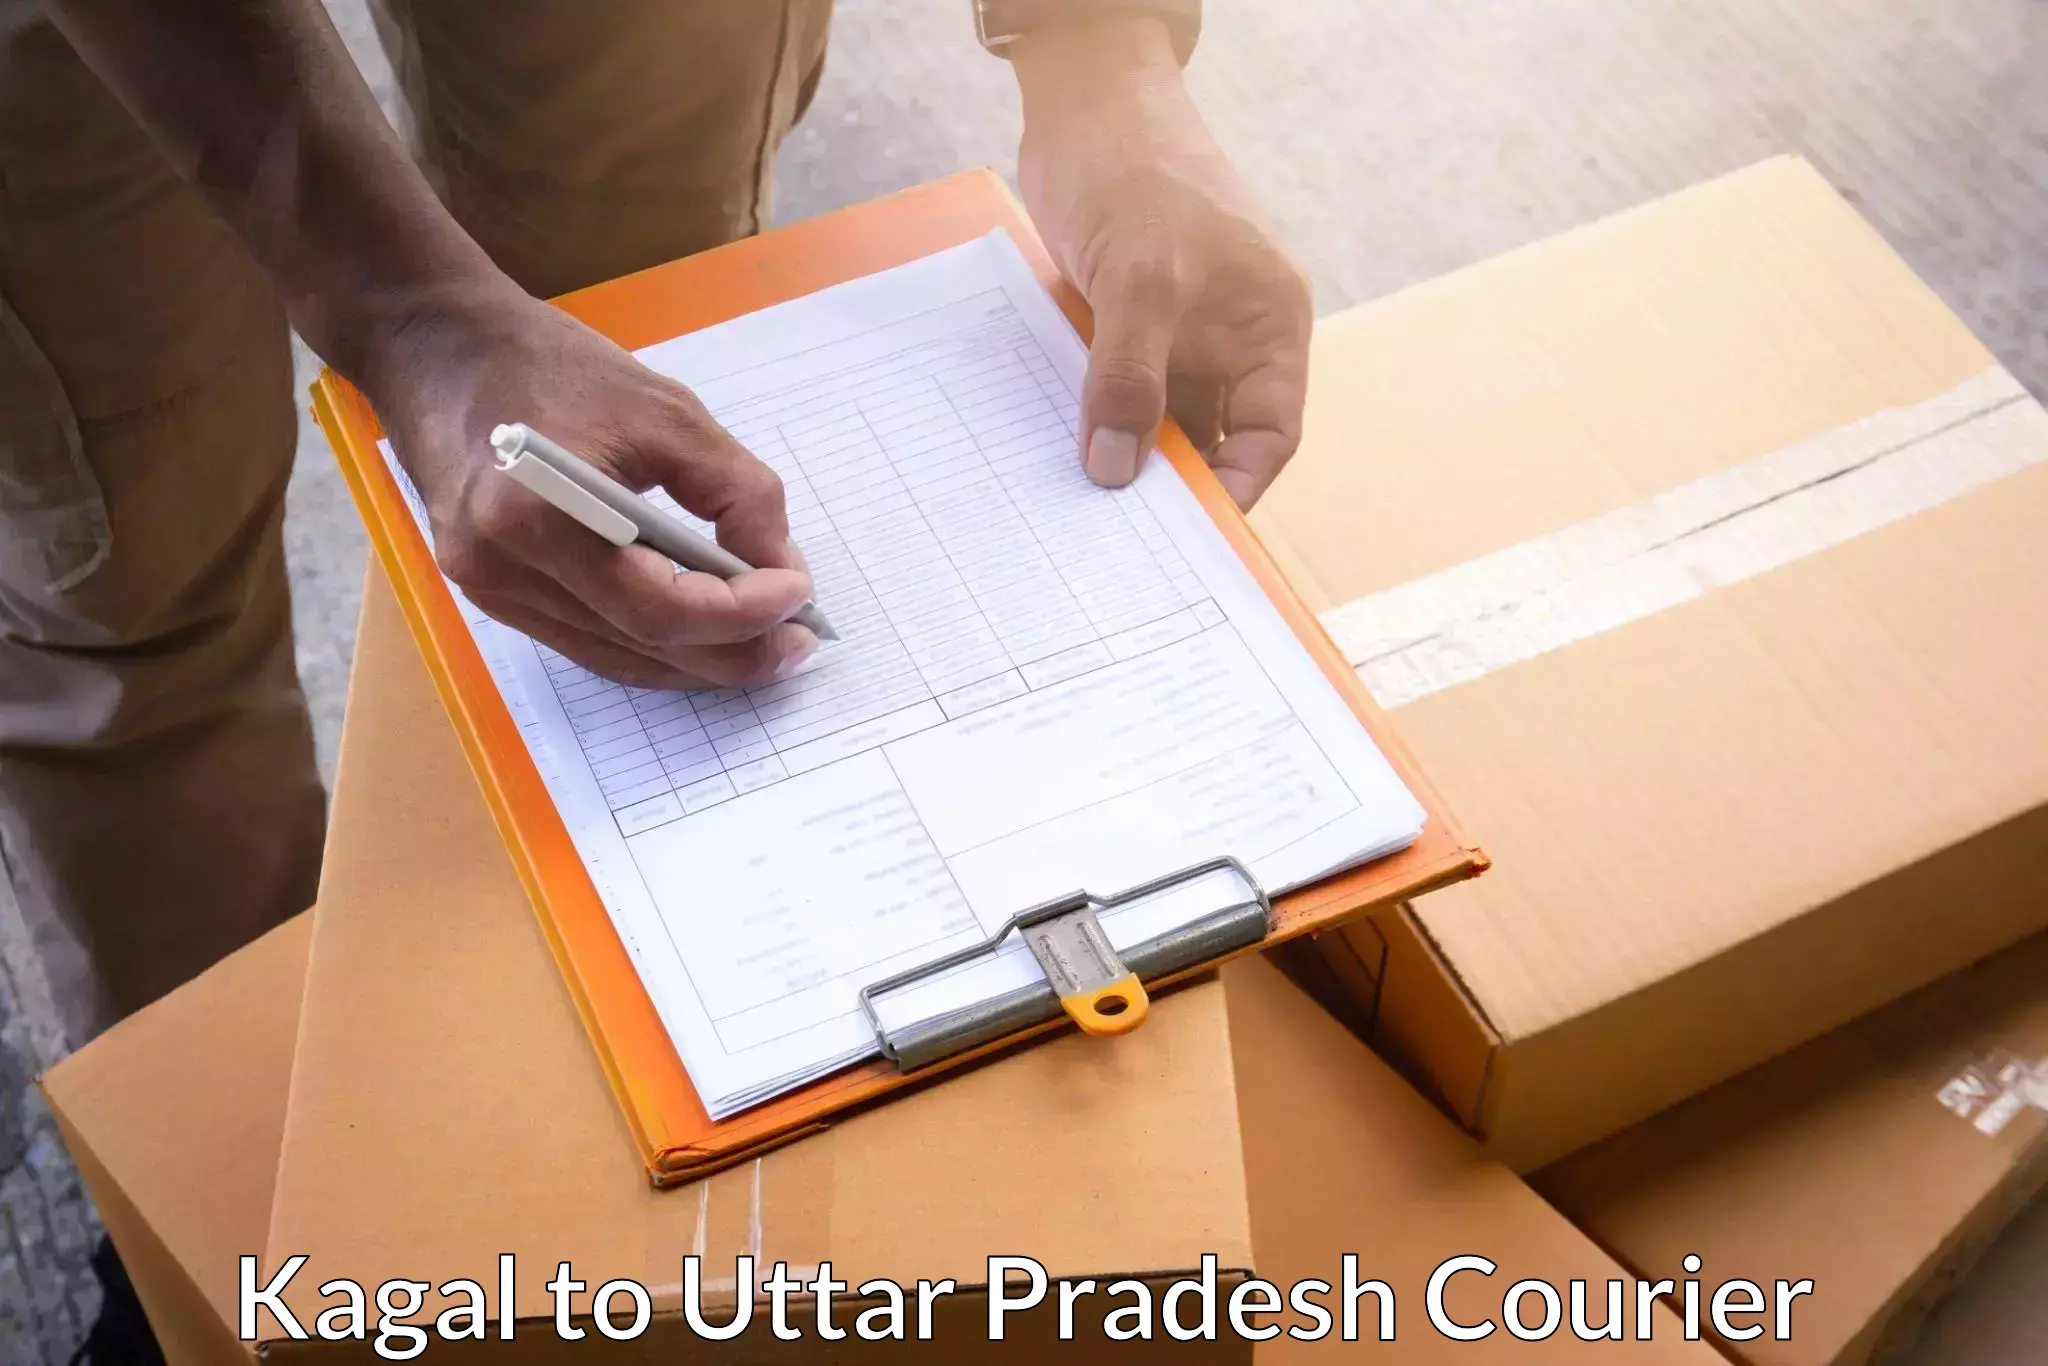 High-capacity parcel service Kagal to Cholapur